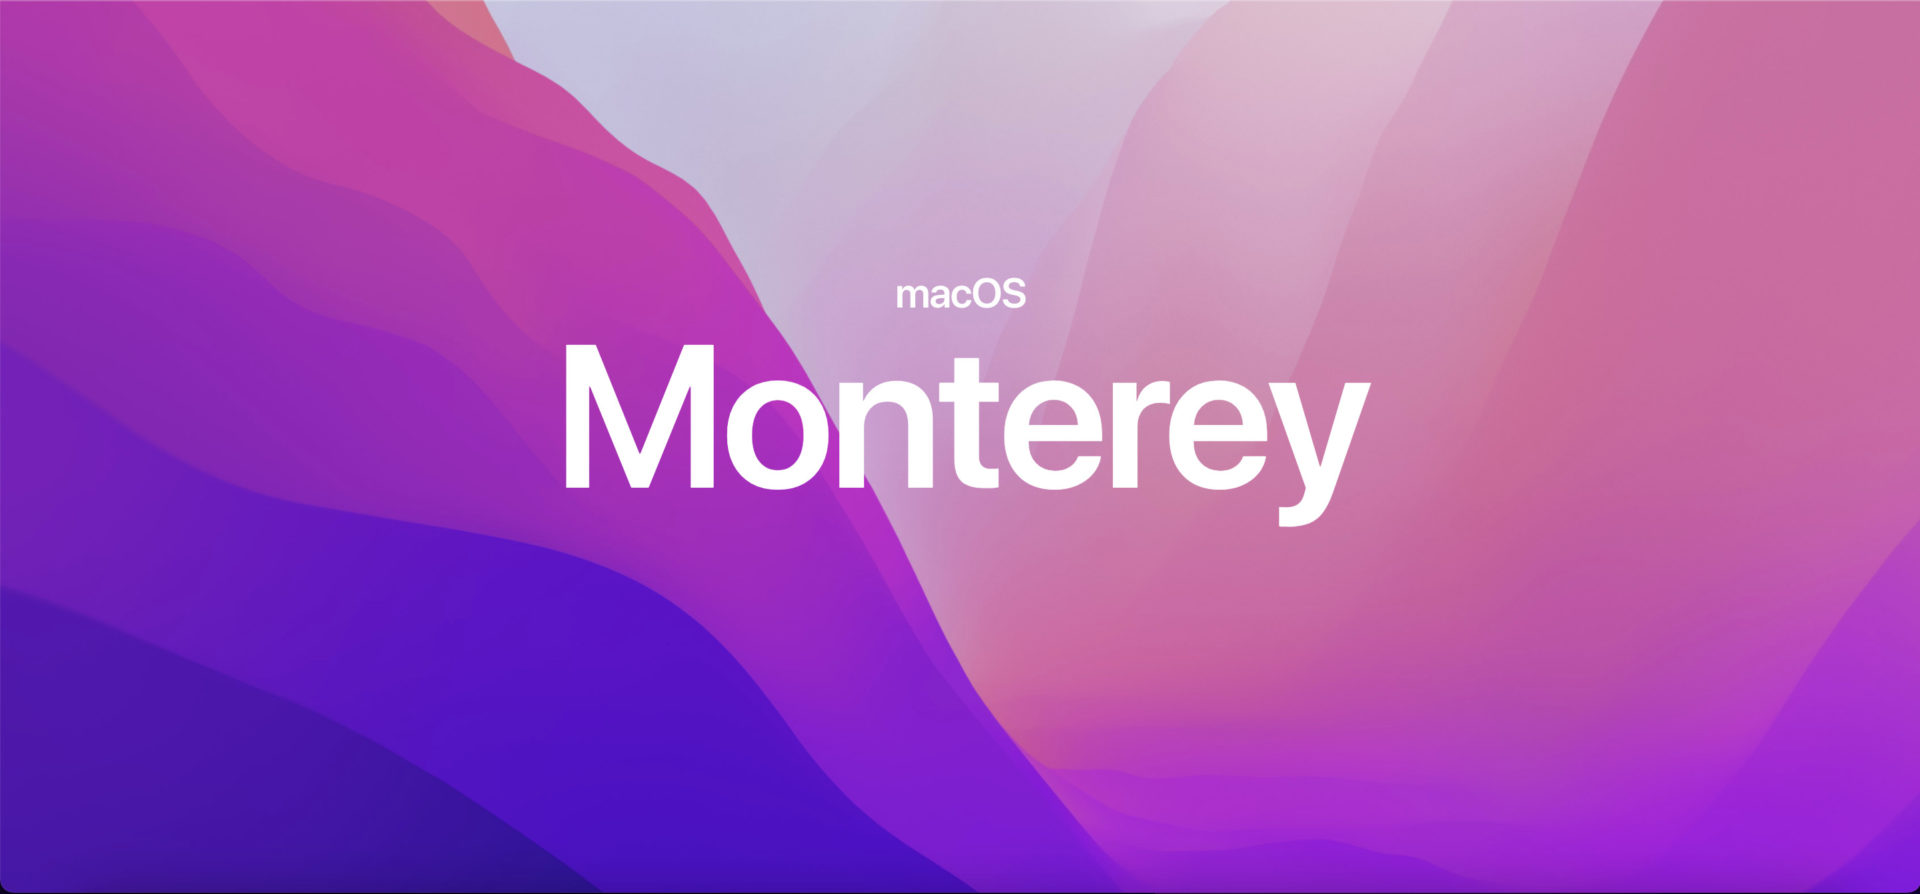 เปิดตัว macOS Monterey ใช้งานร่วมกับอุปกรณ์อื่นได้ดีขึ้น, Shortcut สำหรับ Mac และ Safari โฉมใหม่